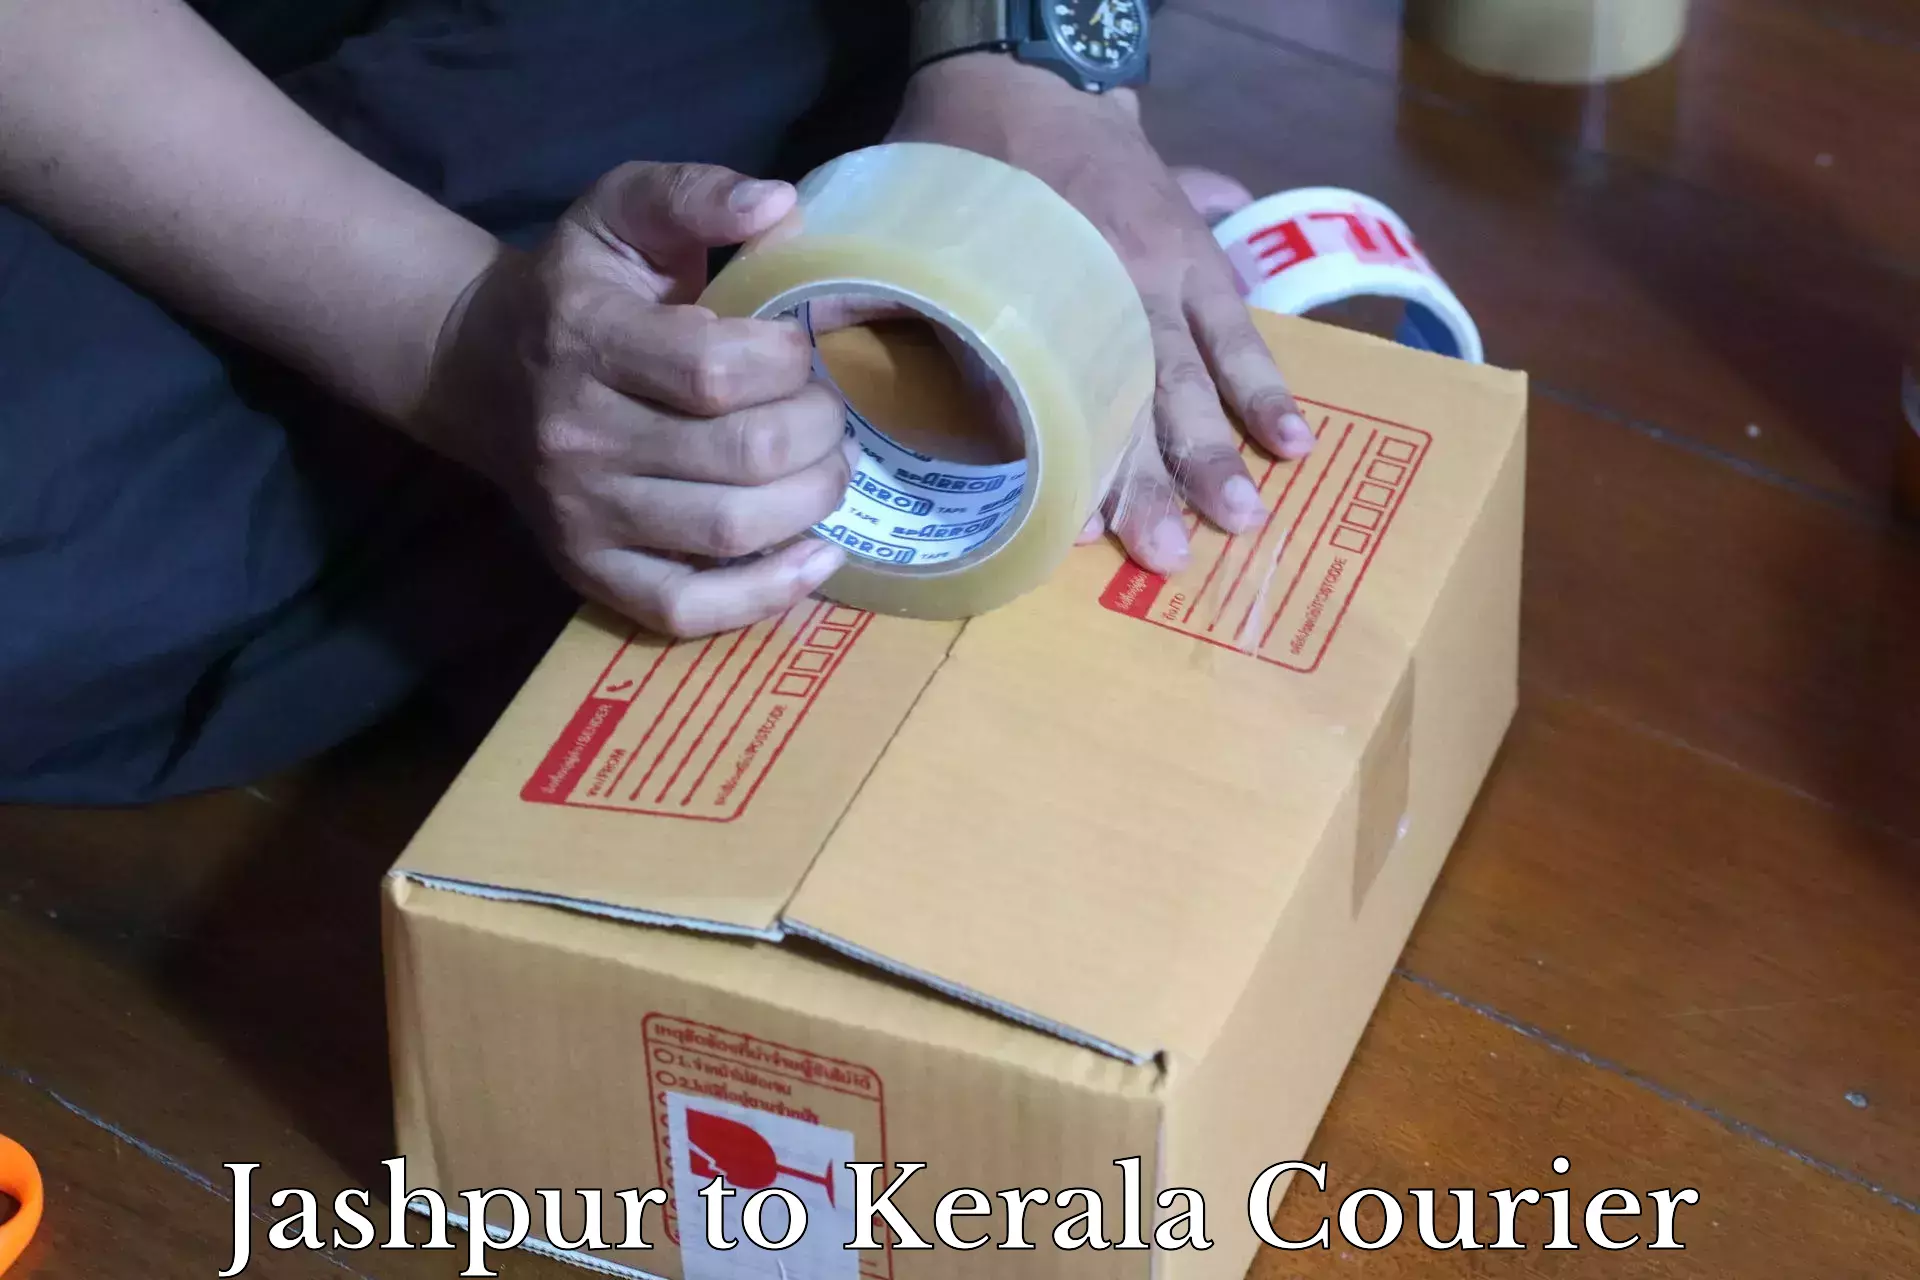 Bulk courier orders Jashpur to Munnar